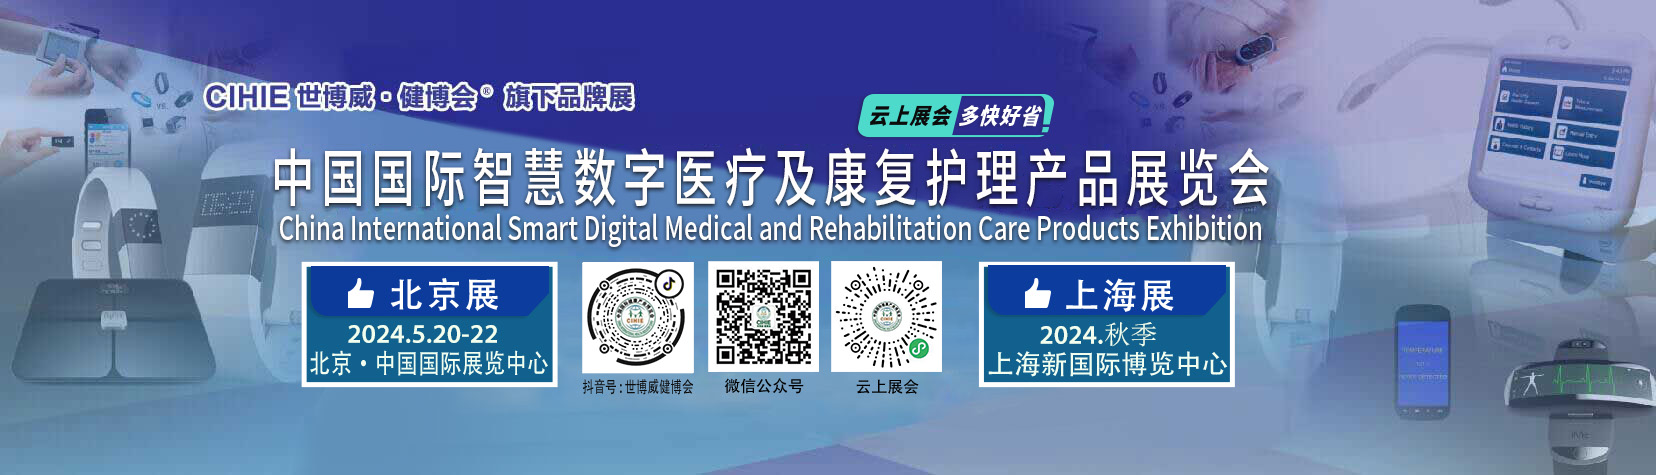 中国国际智慧医疗展会